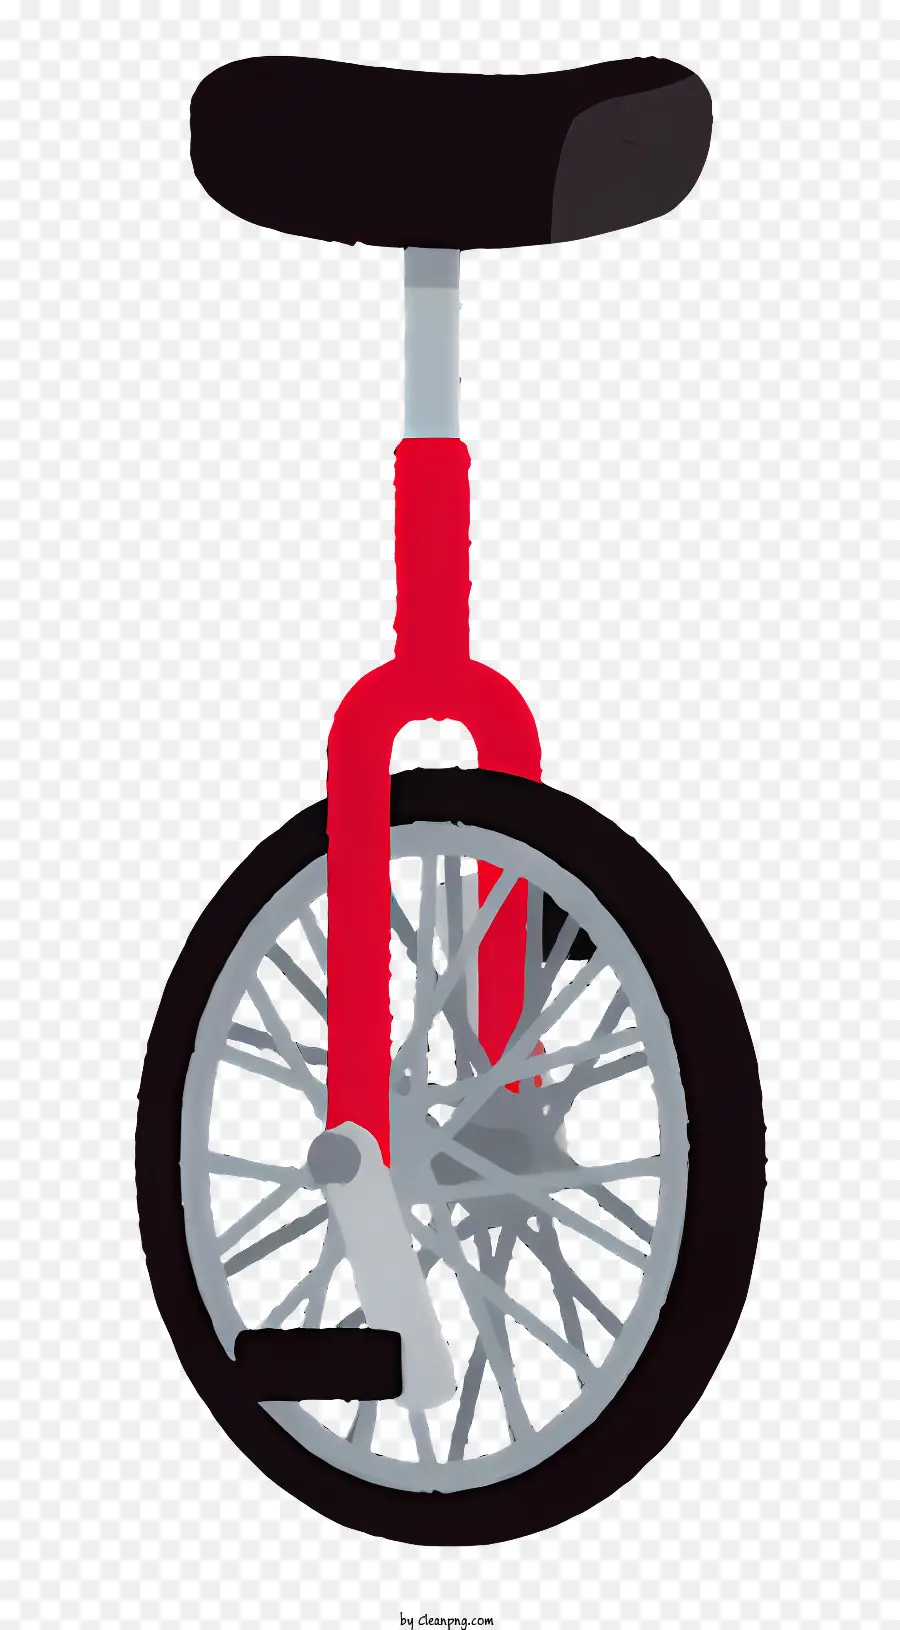 in bianco e nero di confine - Sedile rosso, unicicle a pneumatico nero su sfondo nero